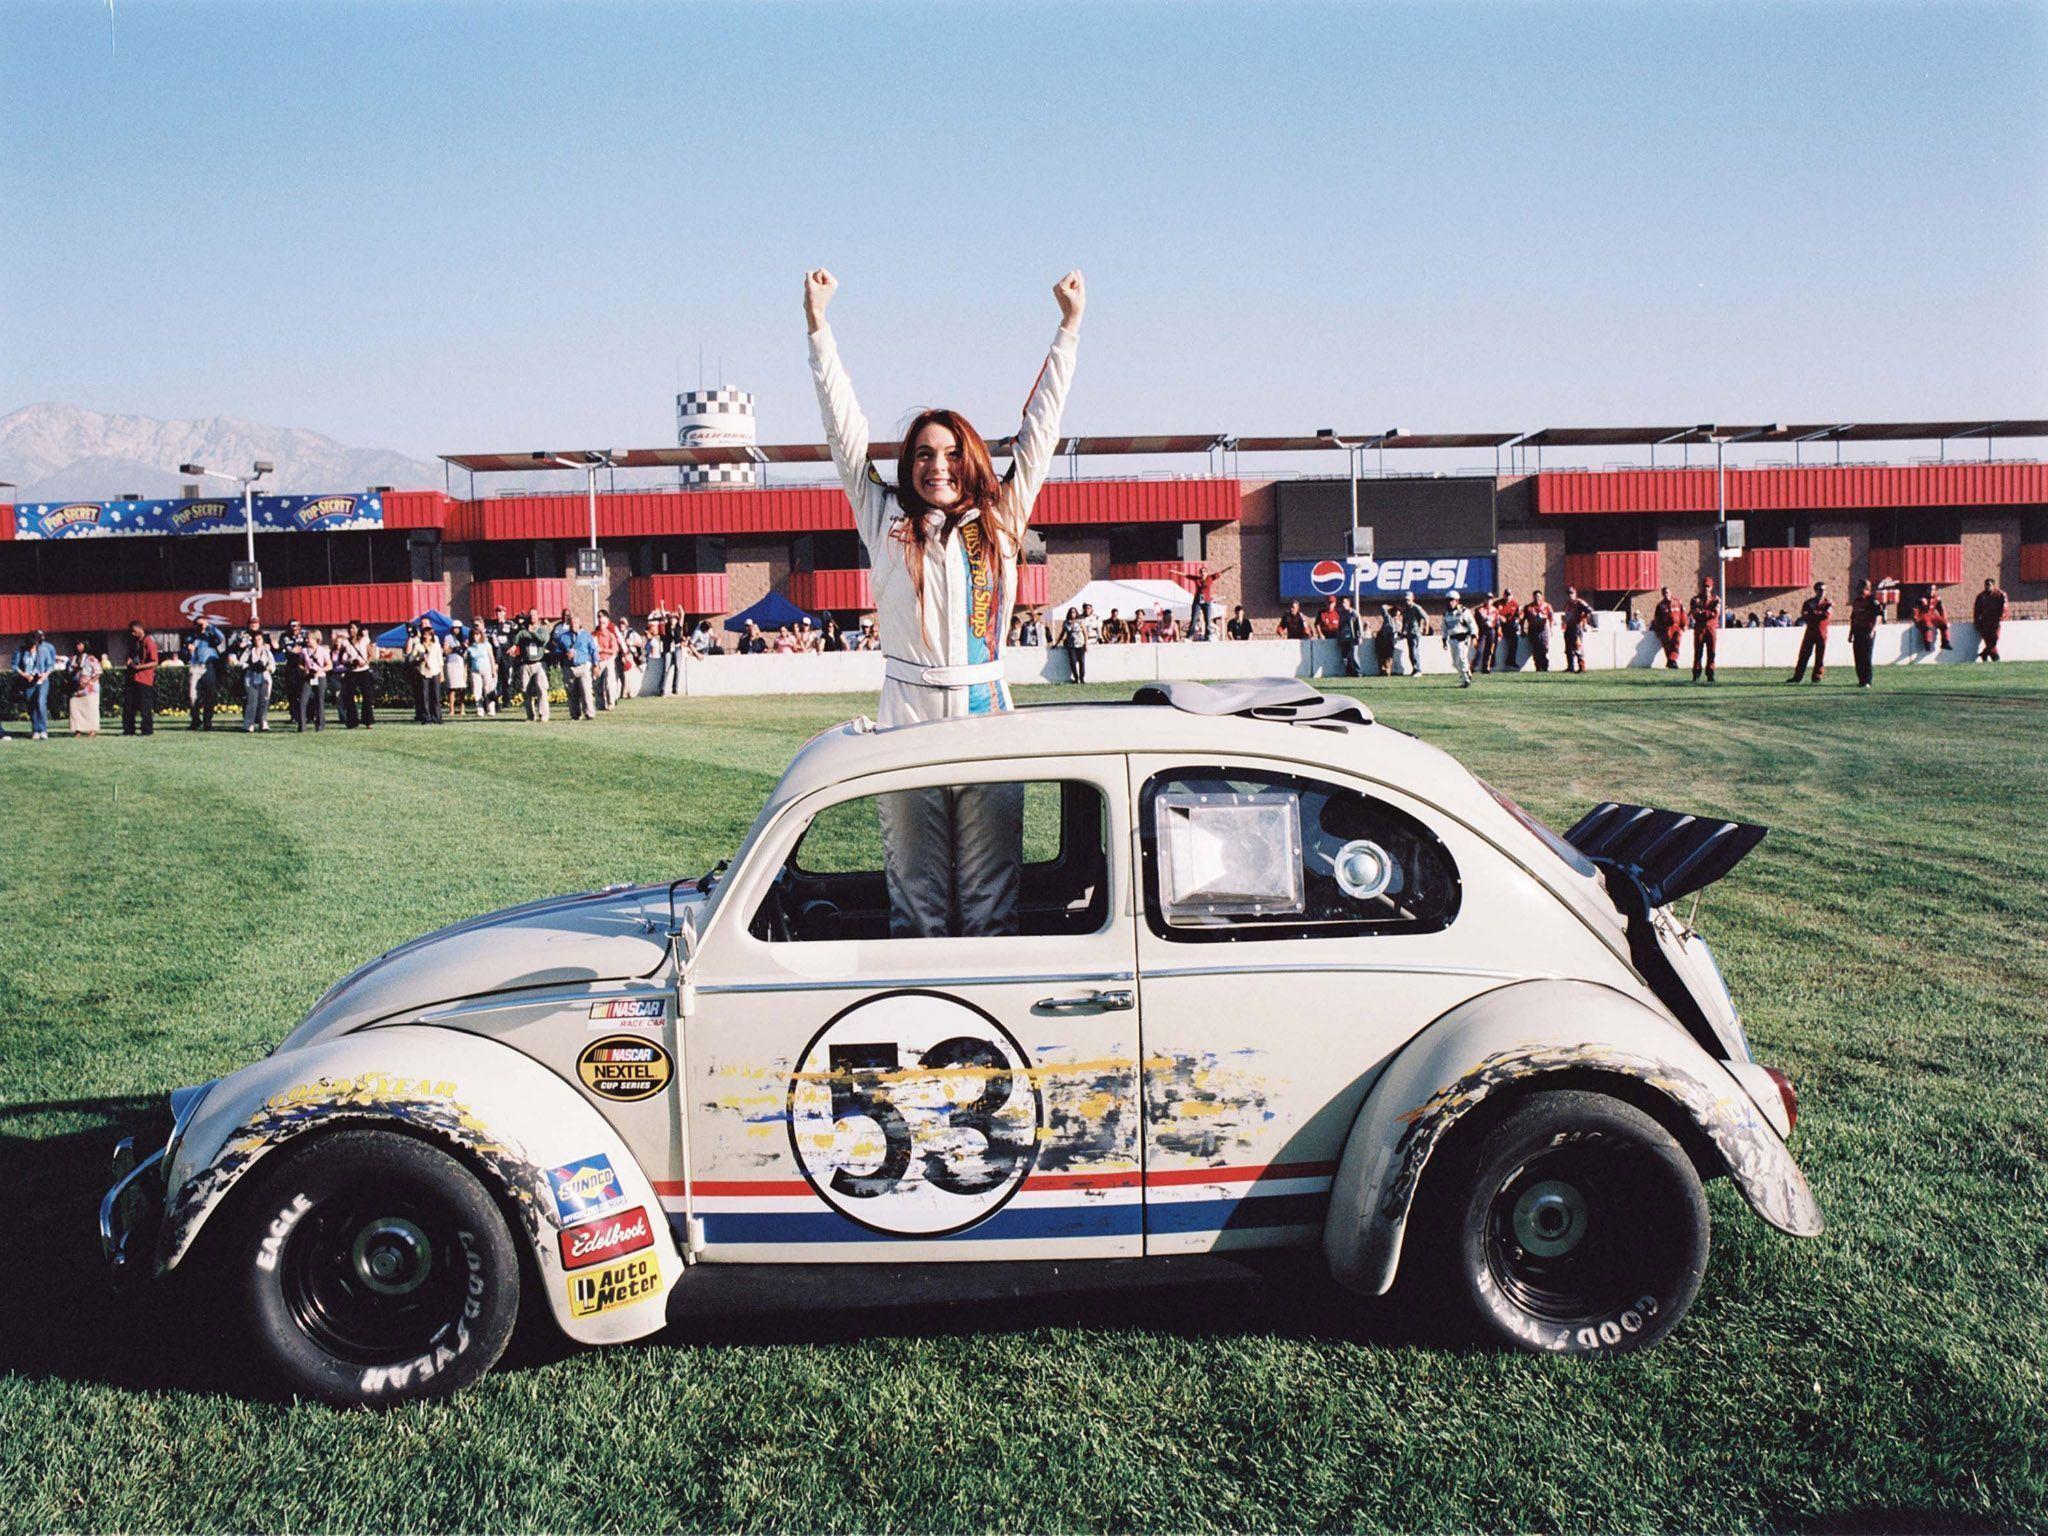 2005 Volkswagen Beetle Herbie movie bug concept race racing d